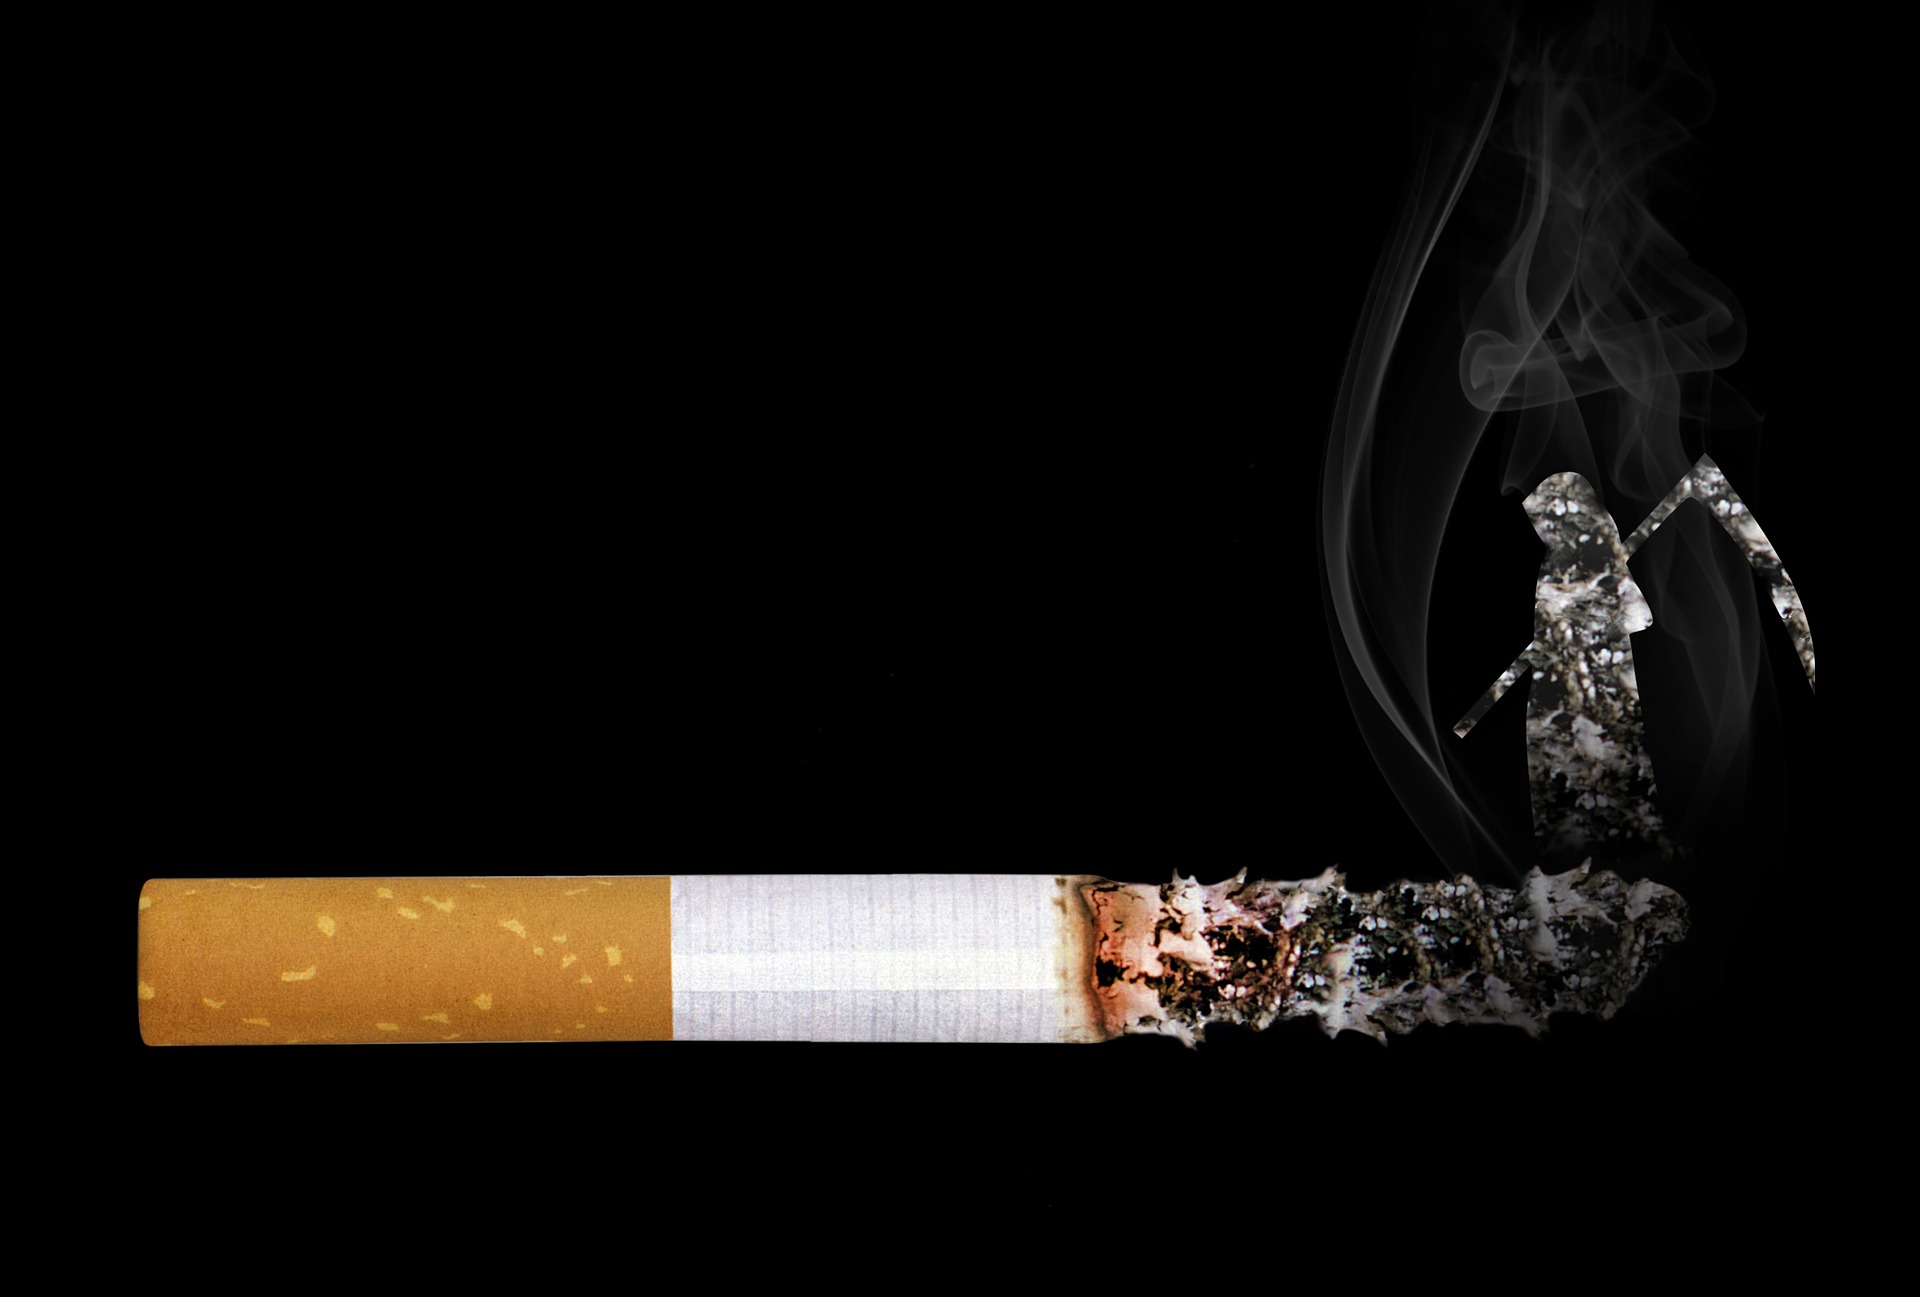 即使是<font color="red">低</font>强度吸烟，也增加死亡风险！